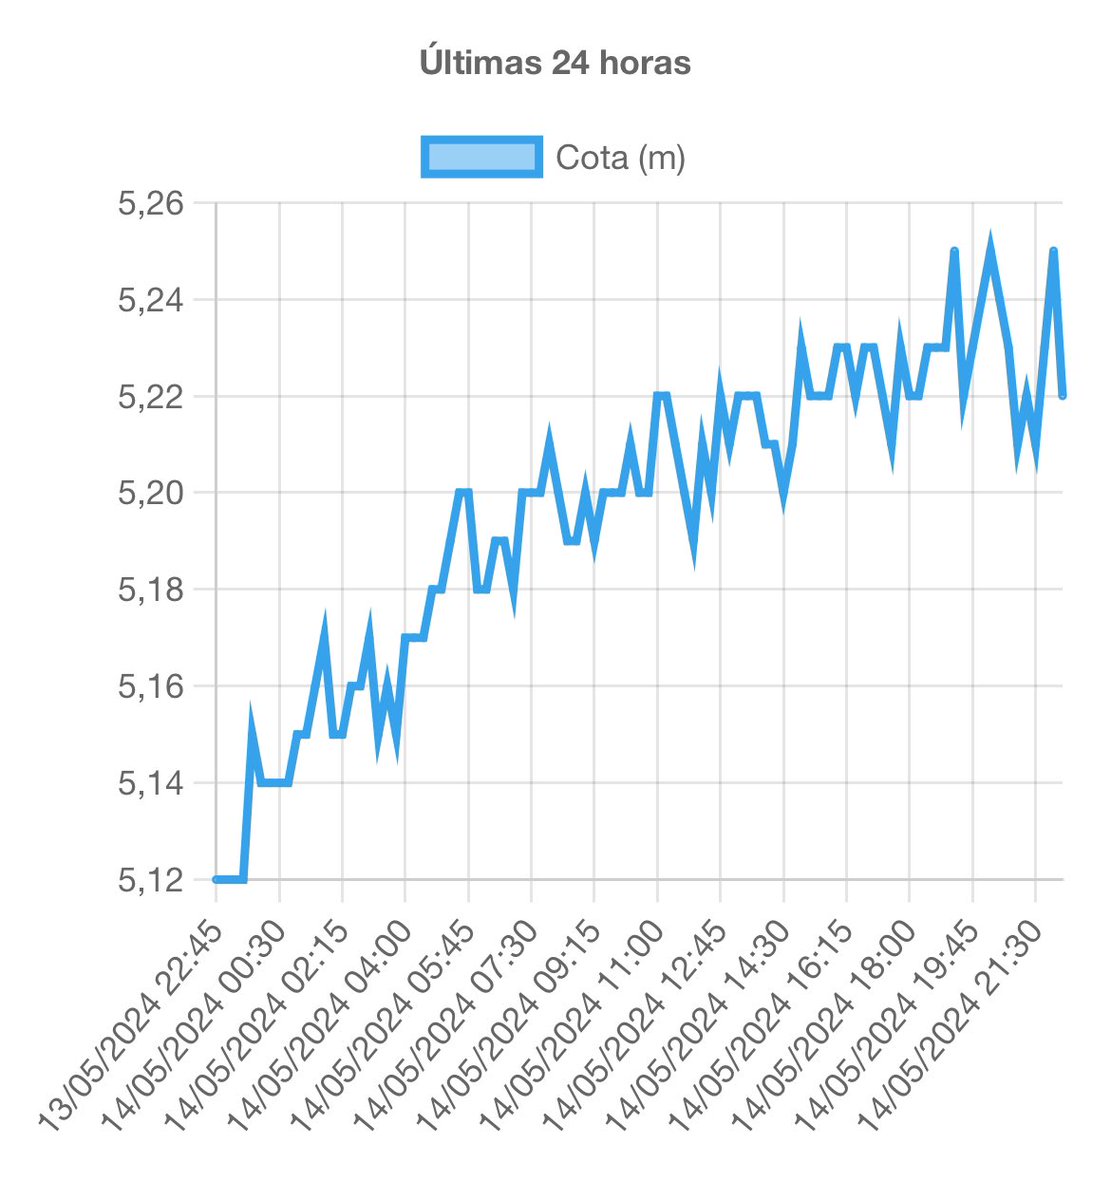 AGORA | Nível do Guaíba oscilou muito nas últimas três horas, entre 5,22 m e 5,27 m. Com isso, nesta atualização não informaremos tendência de descida, estabilidade ou elevação porque não há uma tendência clara.